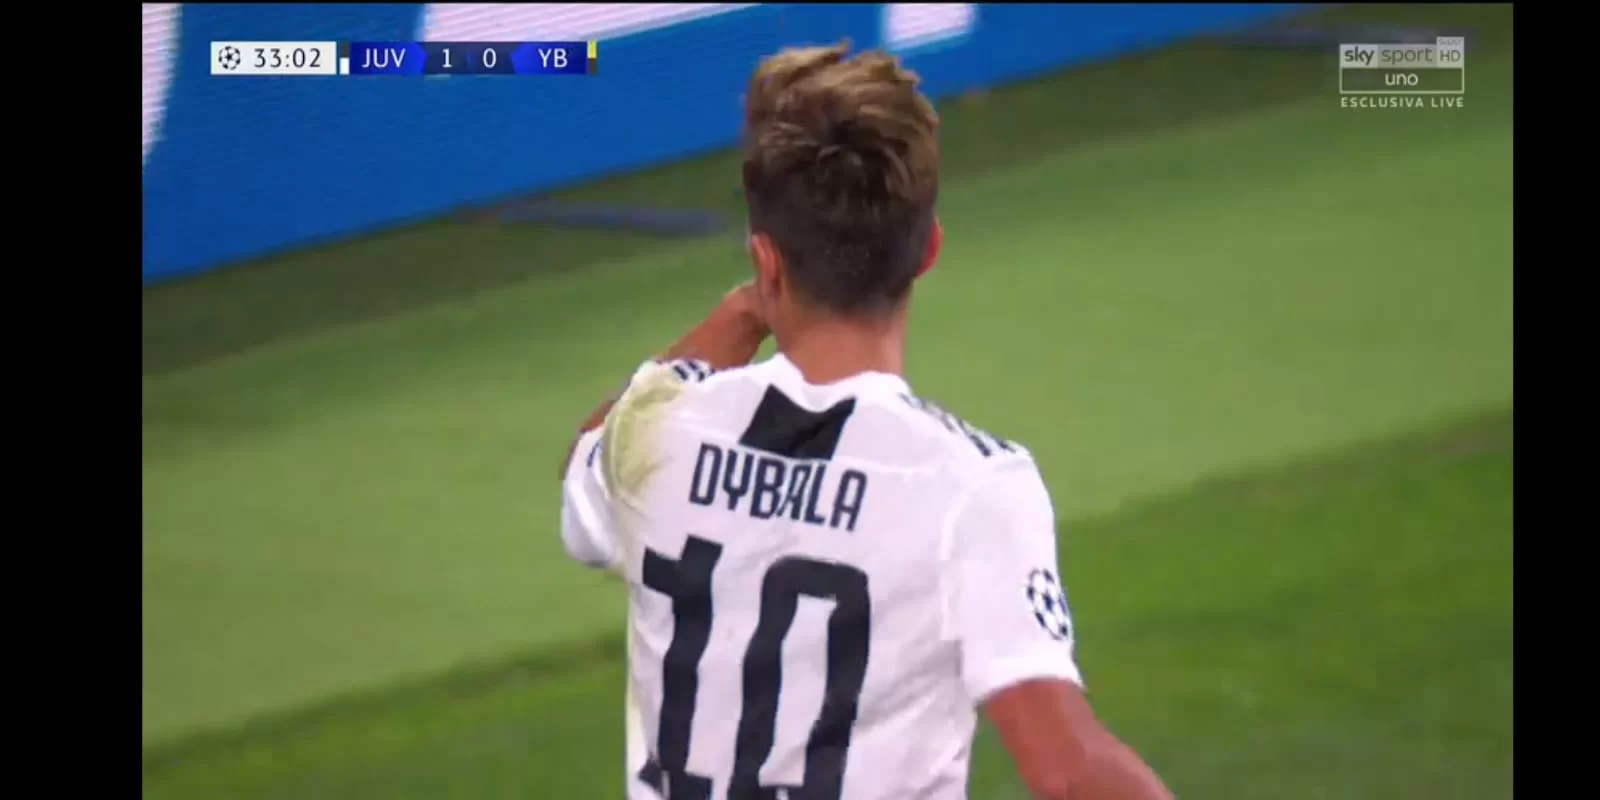 Verso Juventus-Genoa: allenamento terminato, Dybala al lavoro con i compagni